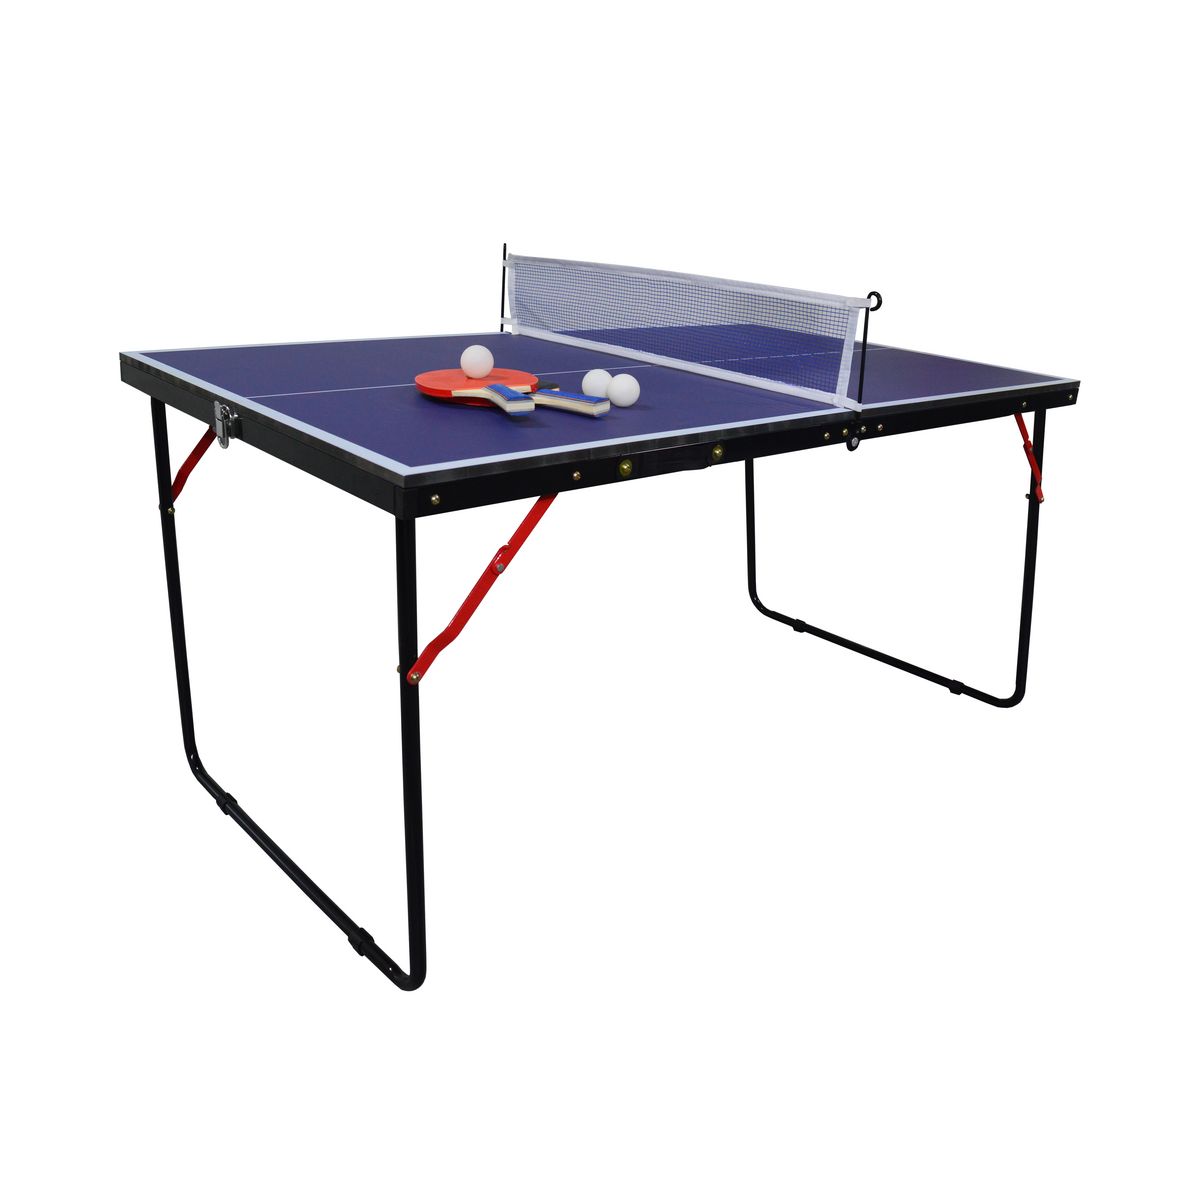 Tennis de Table - Achat / Vente Tennis de Table pas cher - Cdiscount